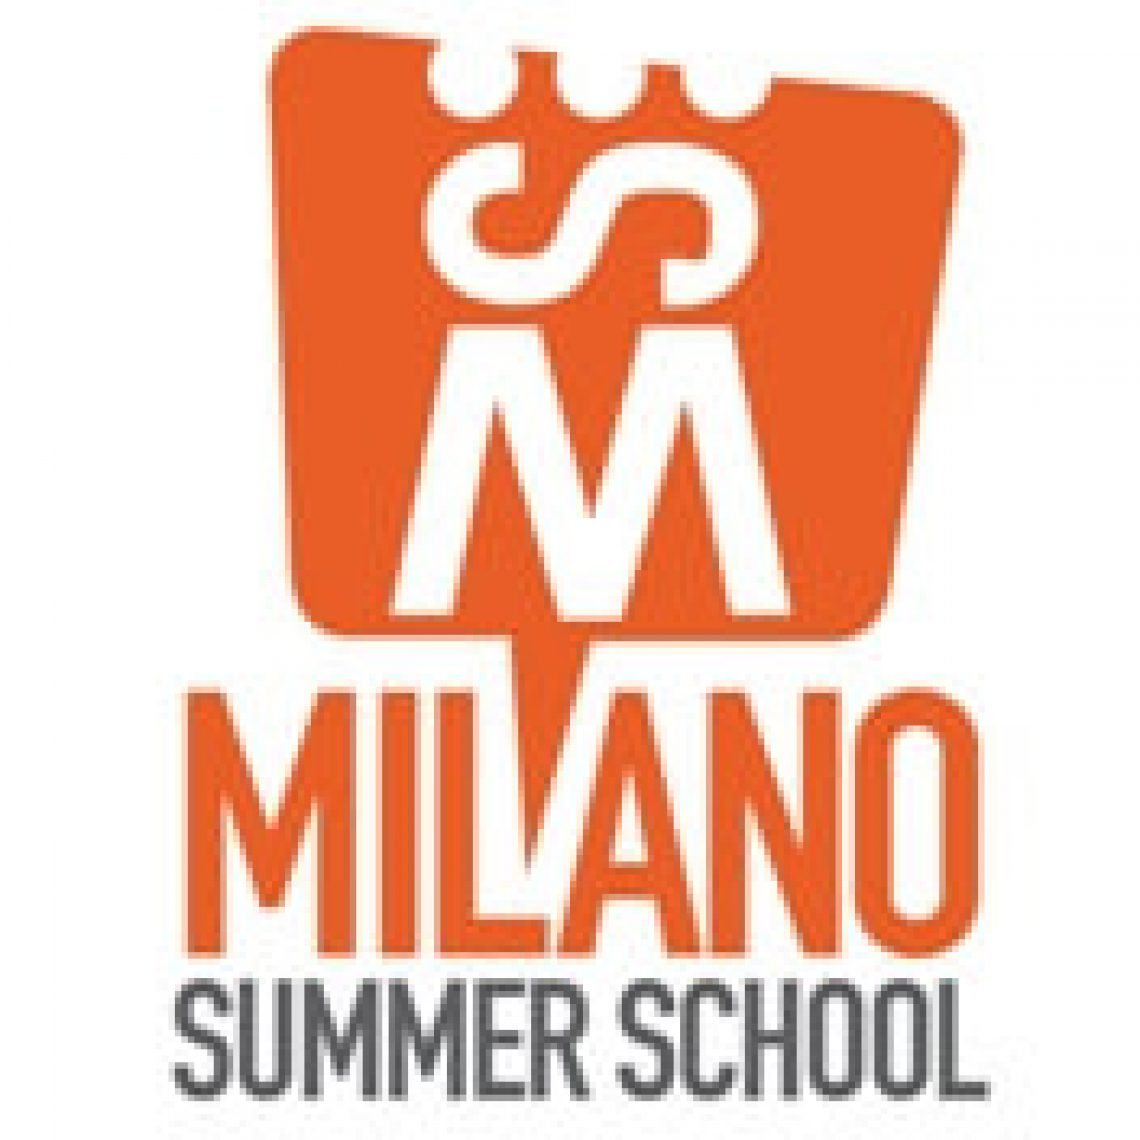 Logo Summer